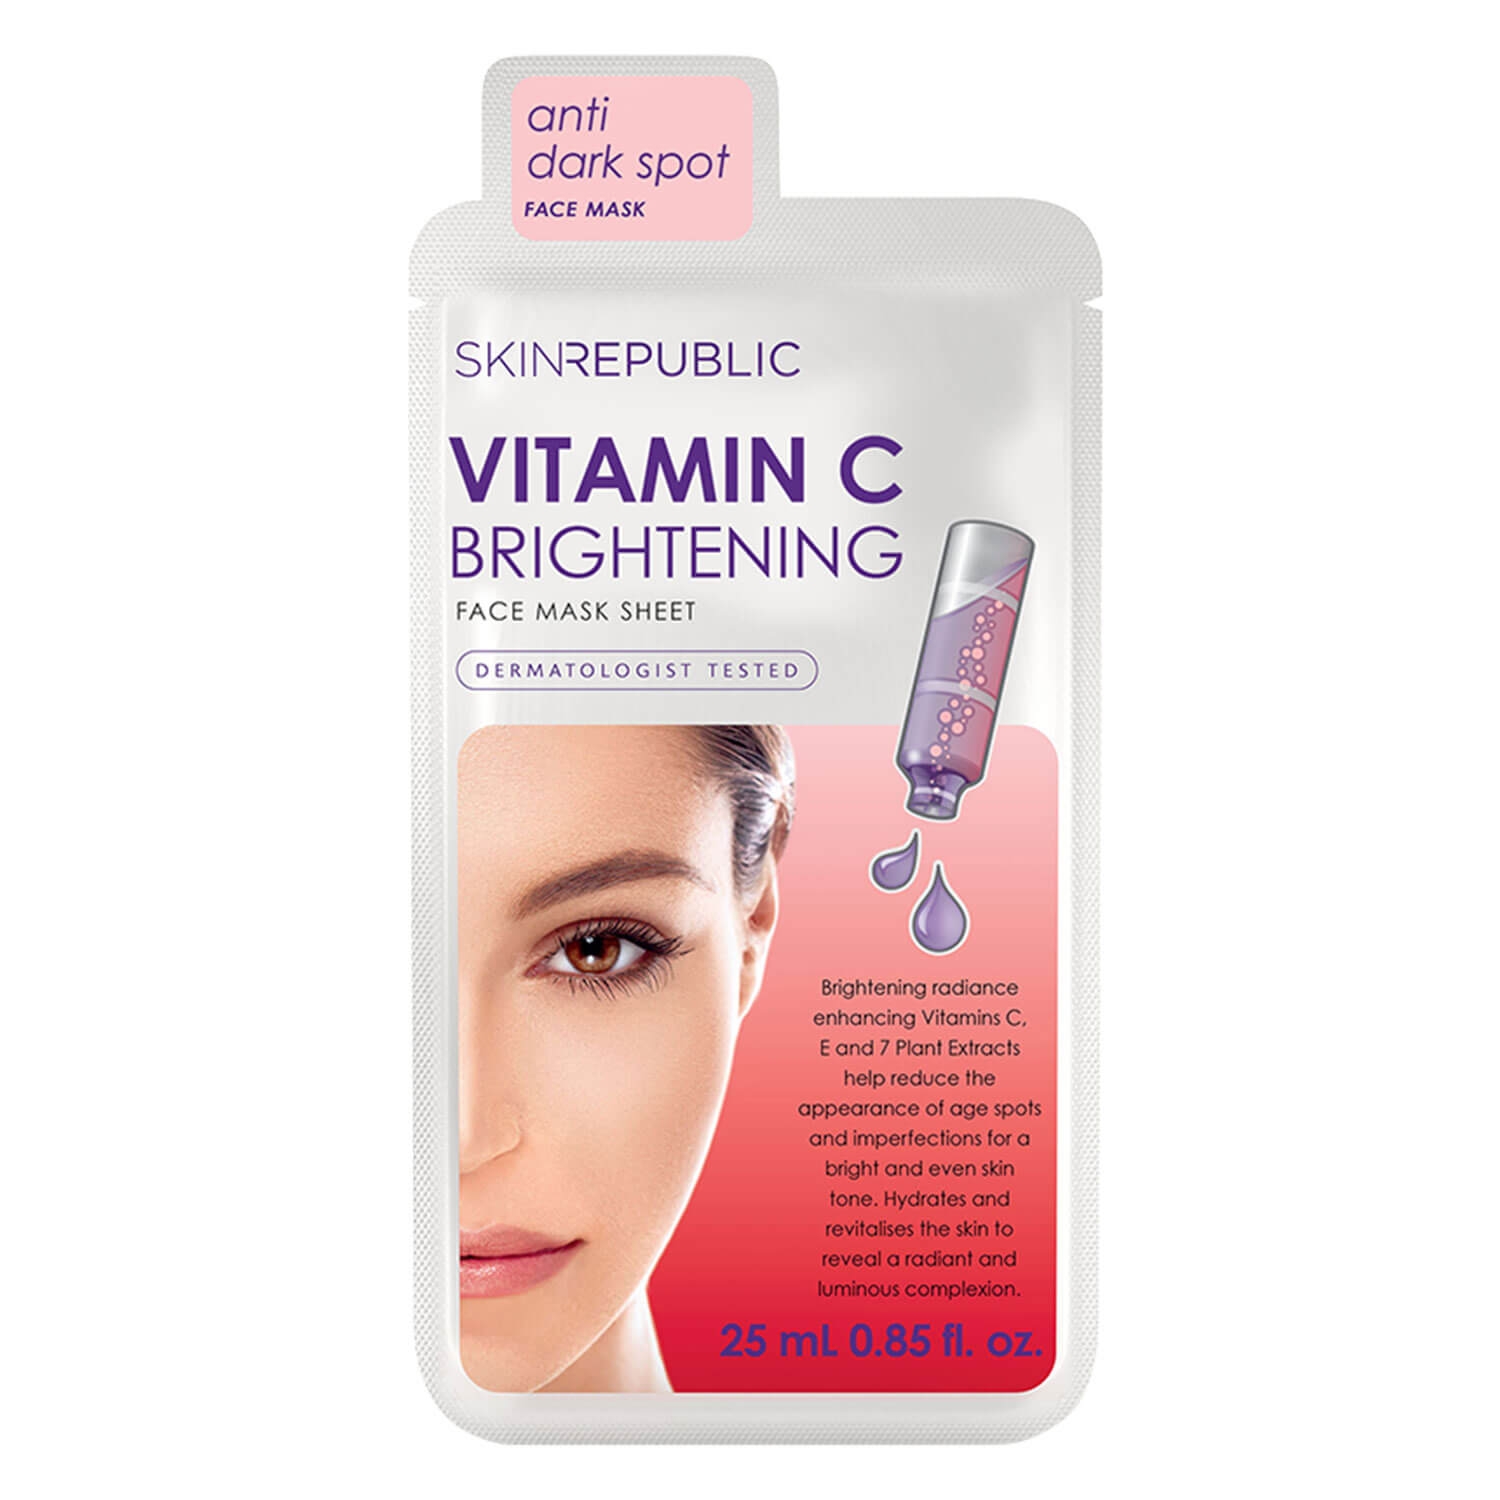 Produktbild von Skin Republic - Brightening Vitamin C Face Mask